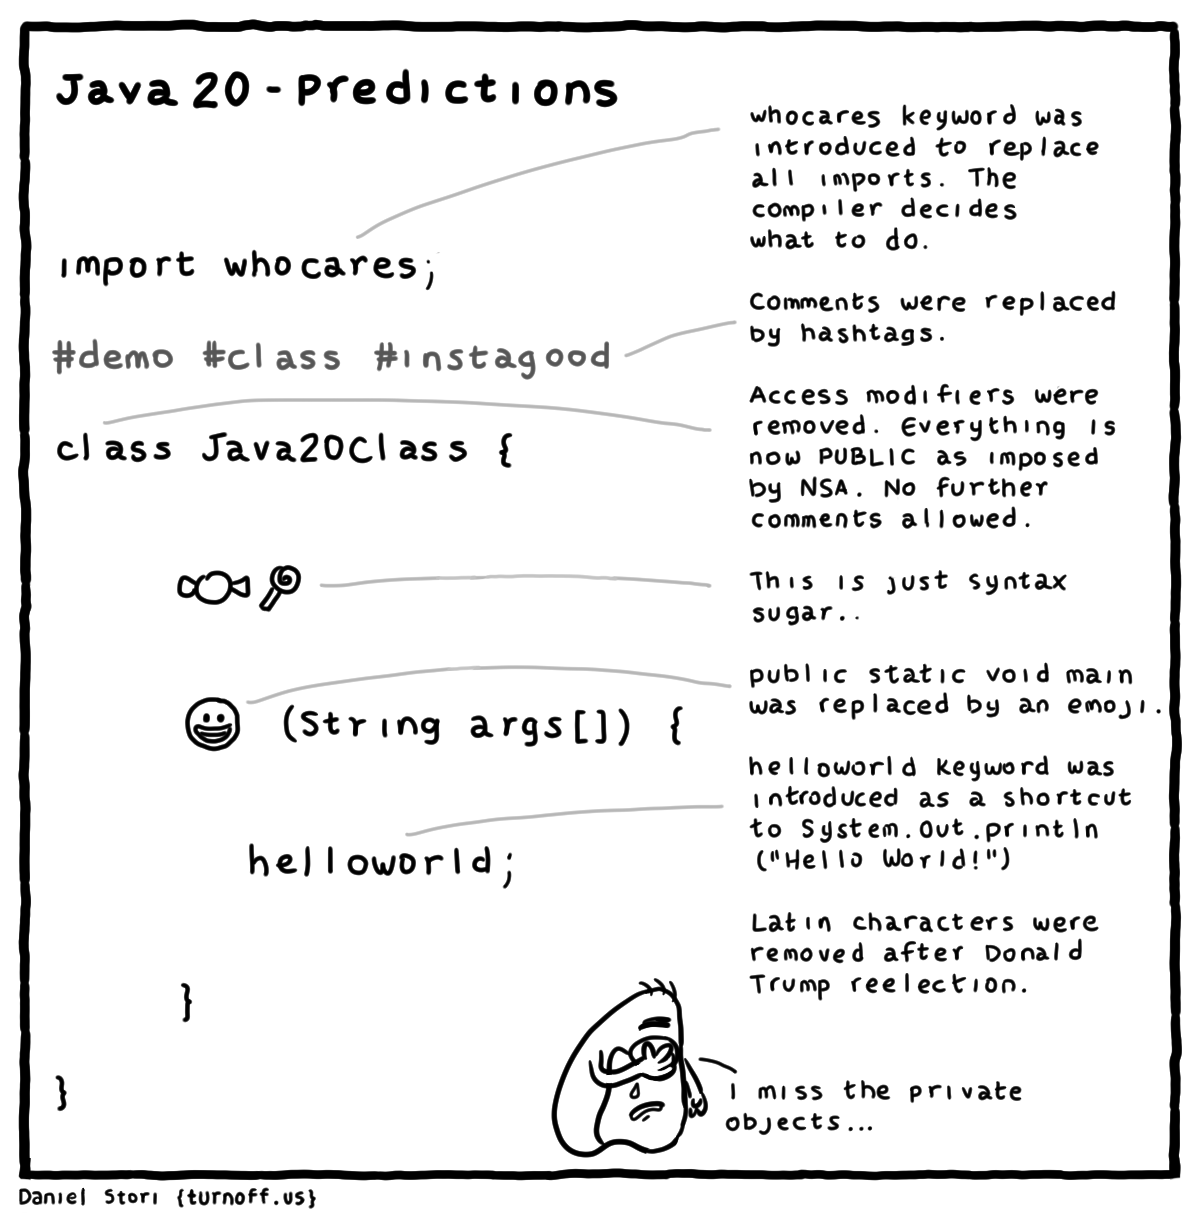 java 20 - predictions geek comic